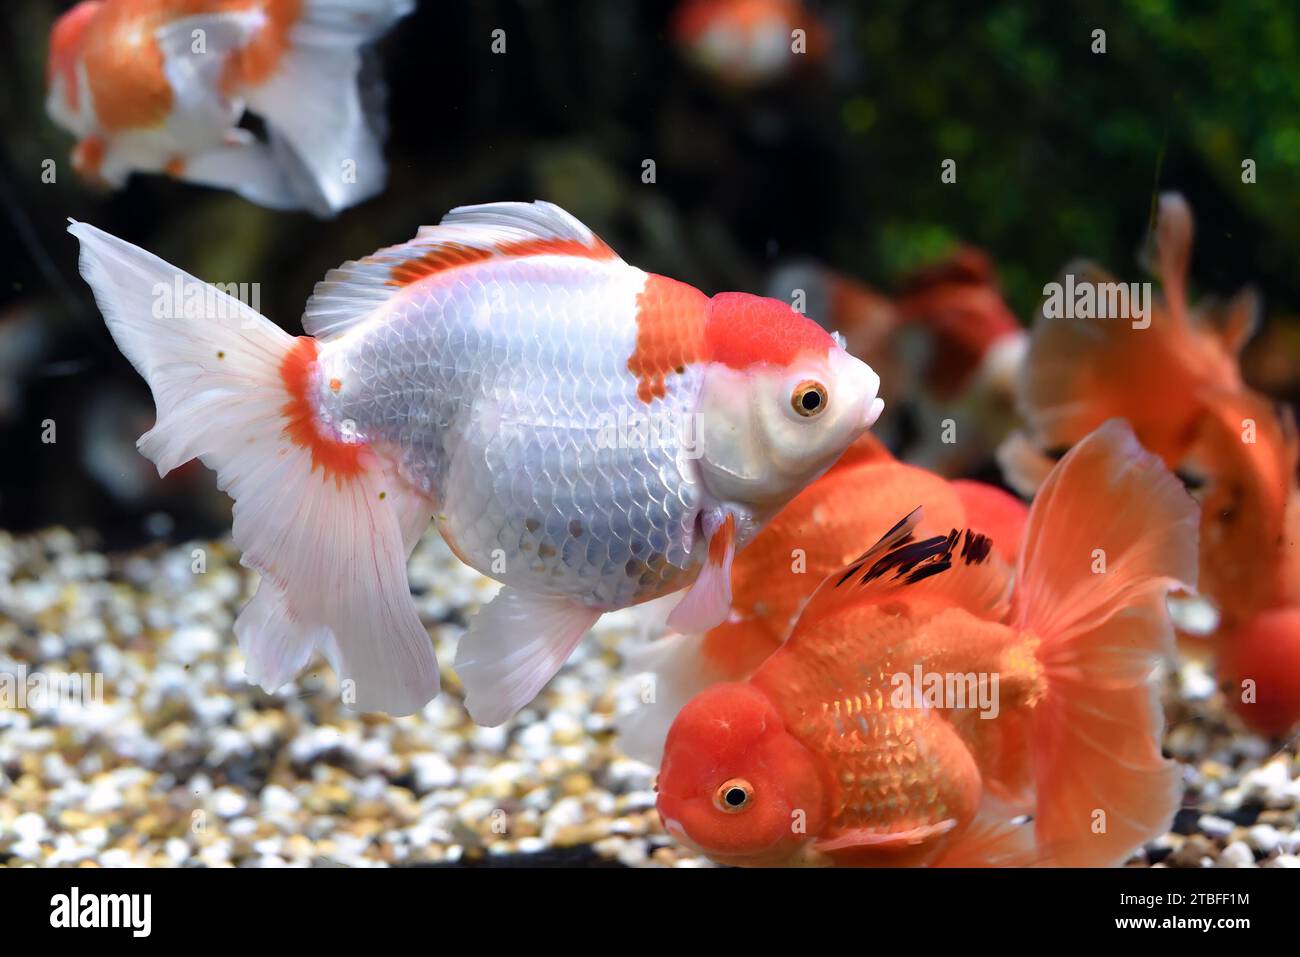 Orange oranda goldfish in aquarium Stock Photo